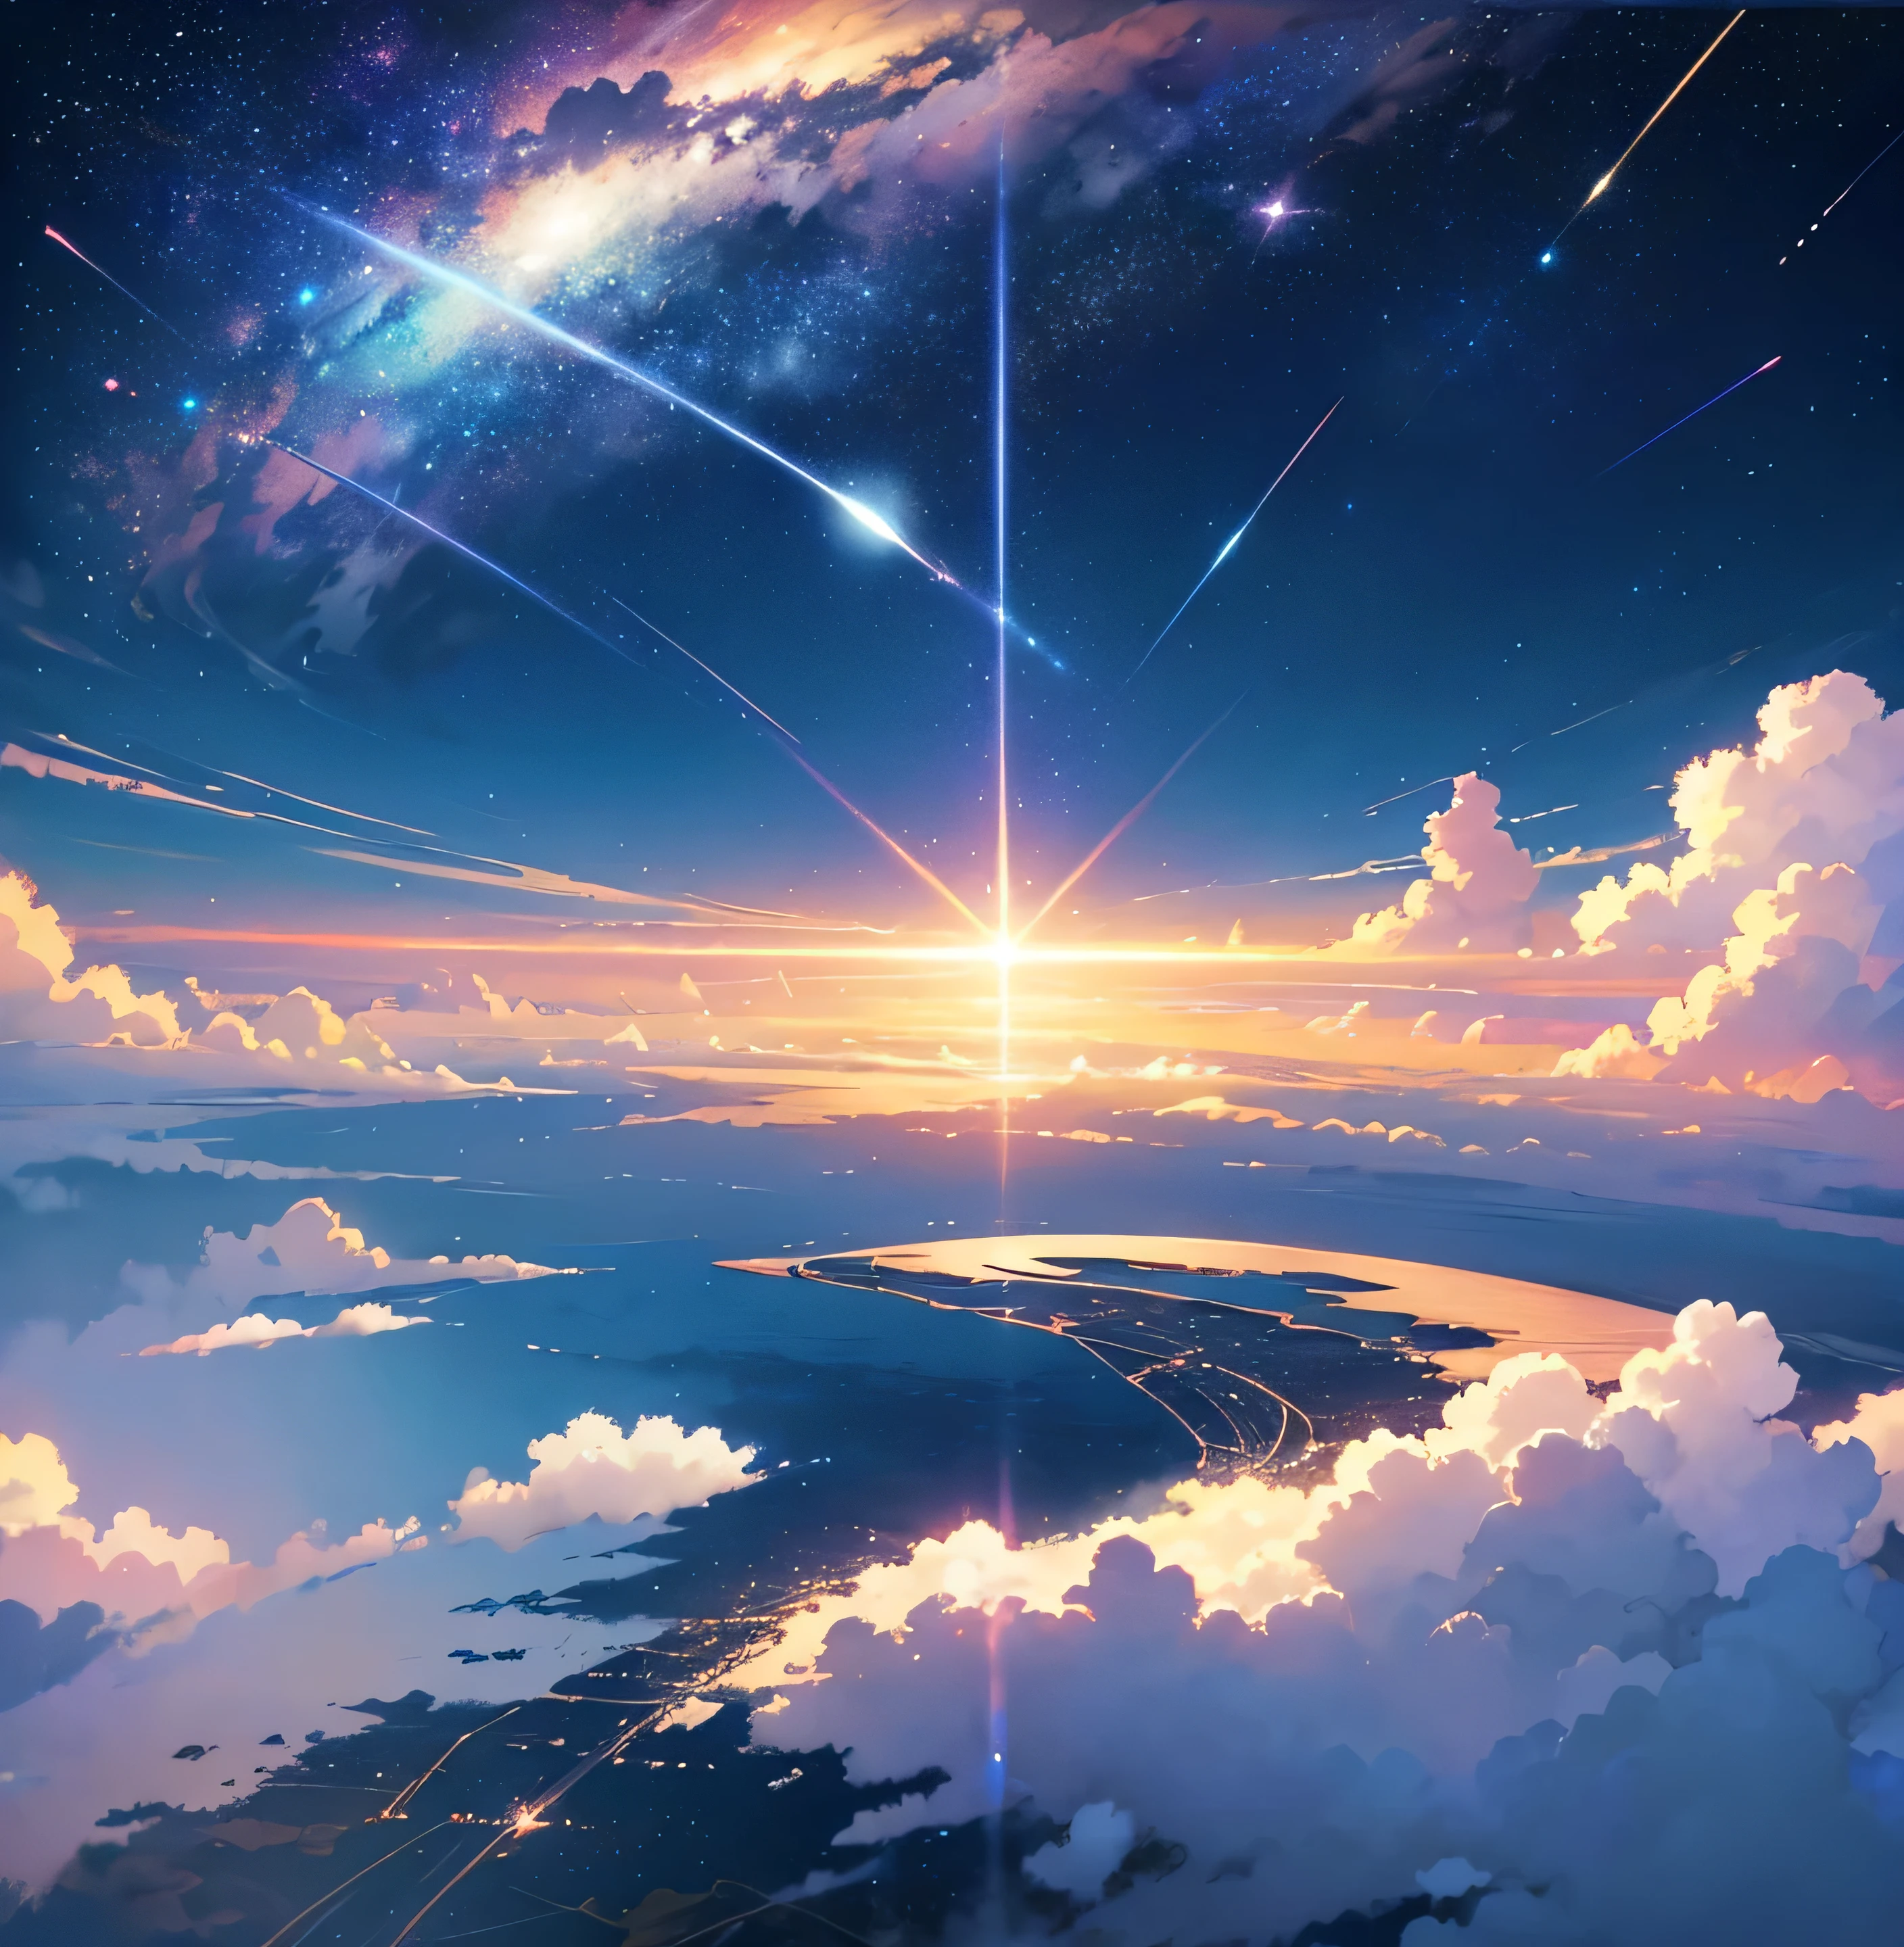 Galaxy Railroad mit Schienen im Himmel、Der Luftzug fährt auf Schienen、Wolkenmeer、Wunderschöne Himmelsanimationsszene mit Sternen und Planeten, Verlassene Stadt schwimmt auf dem Meer,Weltraumhimmel. von Makoto Shinkai, Anime-Kunst-Hintergrundbild 4K, Anime-Kunst-Hintergrundbild 4K, Anime-Kunst-Hintergründe 8K, Anime-Hintergrundbild 4k, Anime-Hintergrundbild 4k, 4K-Anime-Hintergrundbild, Anime Himmel, Tolle Hintergrundbilder, Anime-Hintergrund, Himmlische Planeten im Hintergrund, Anime-Hintergrund art